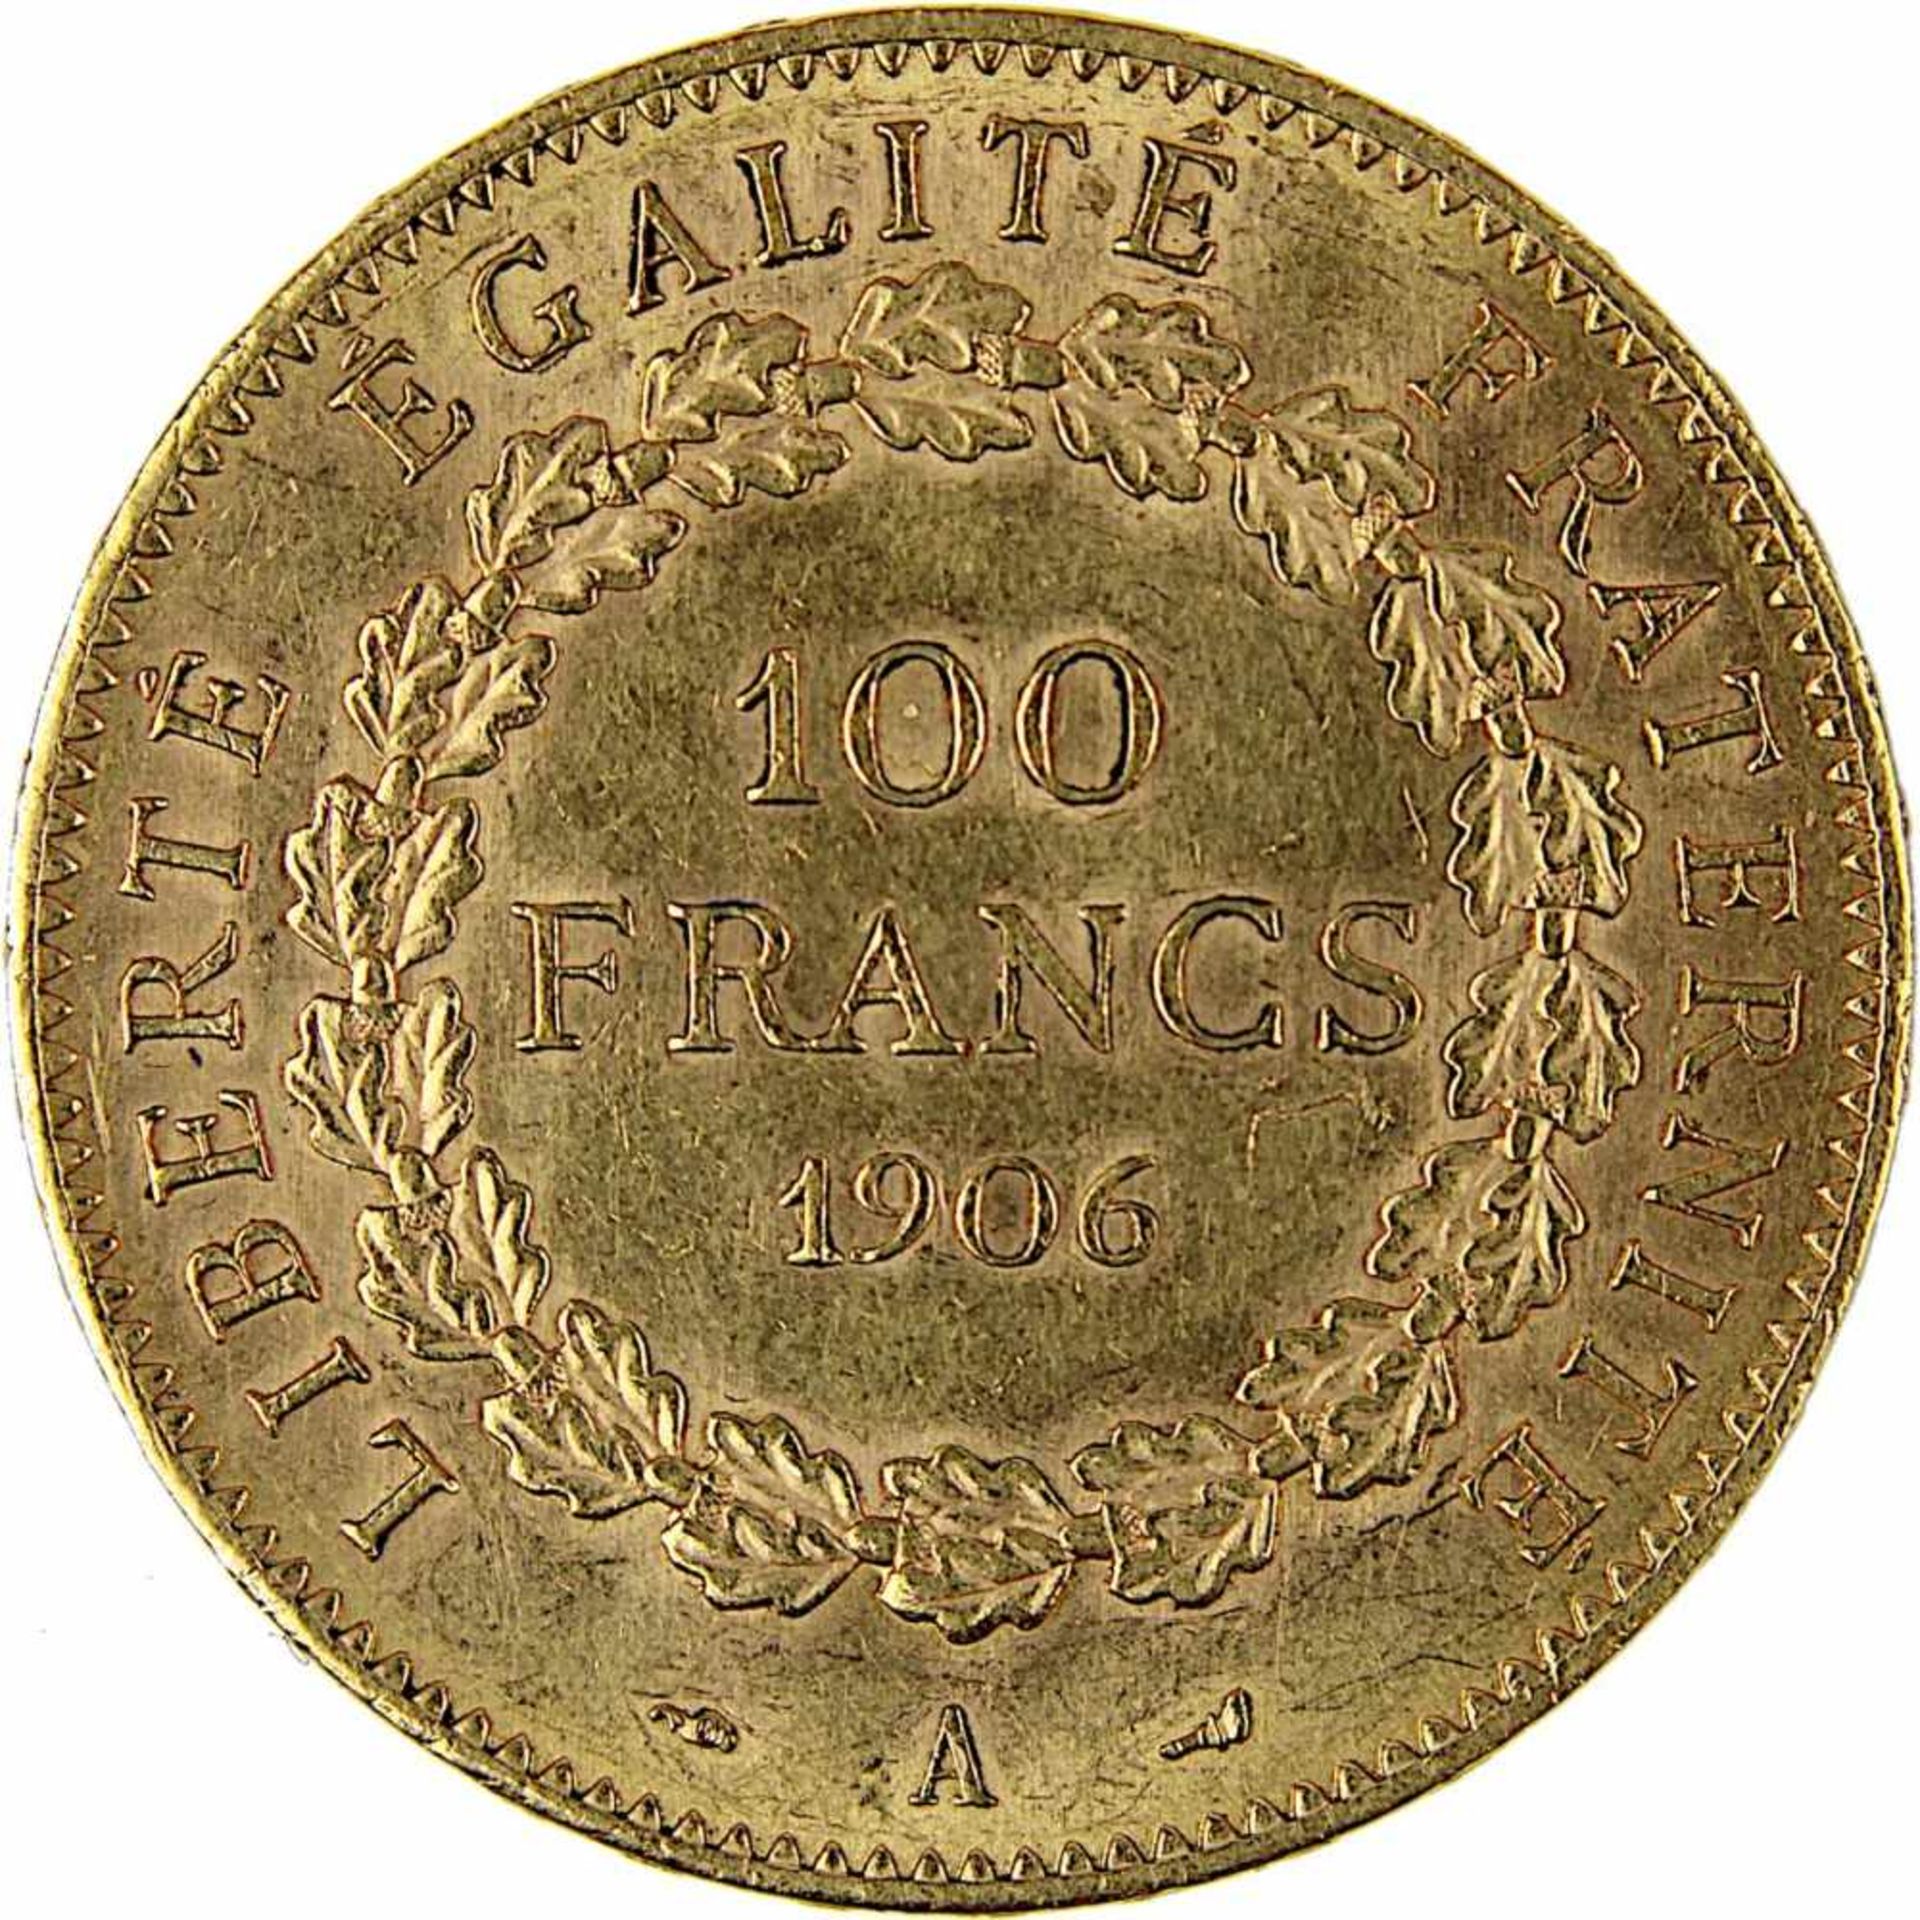 Goldmünze zu 100 Francs, Frankreich 1906, A für Paris, 900er Gold, 32,2 g, Erhaltung sehr schön, - Bild 3 aus 3